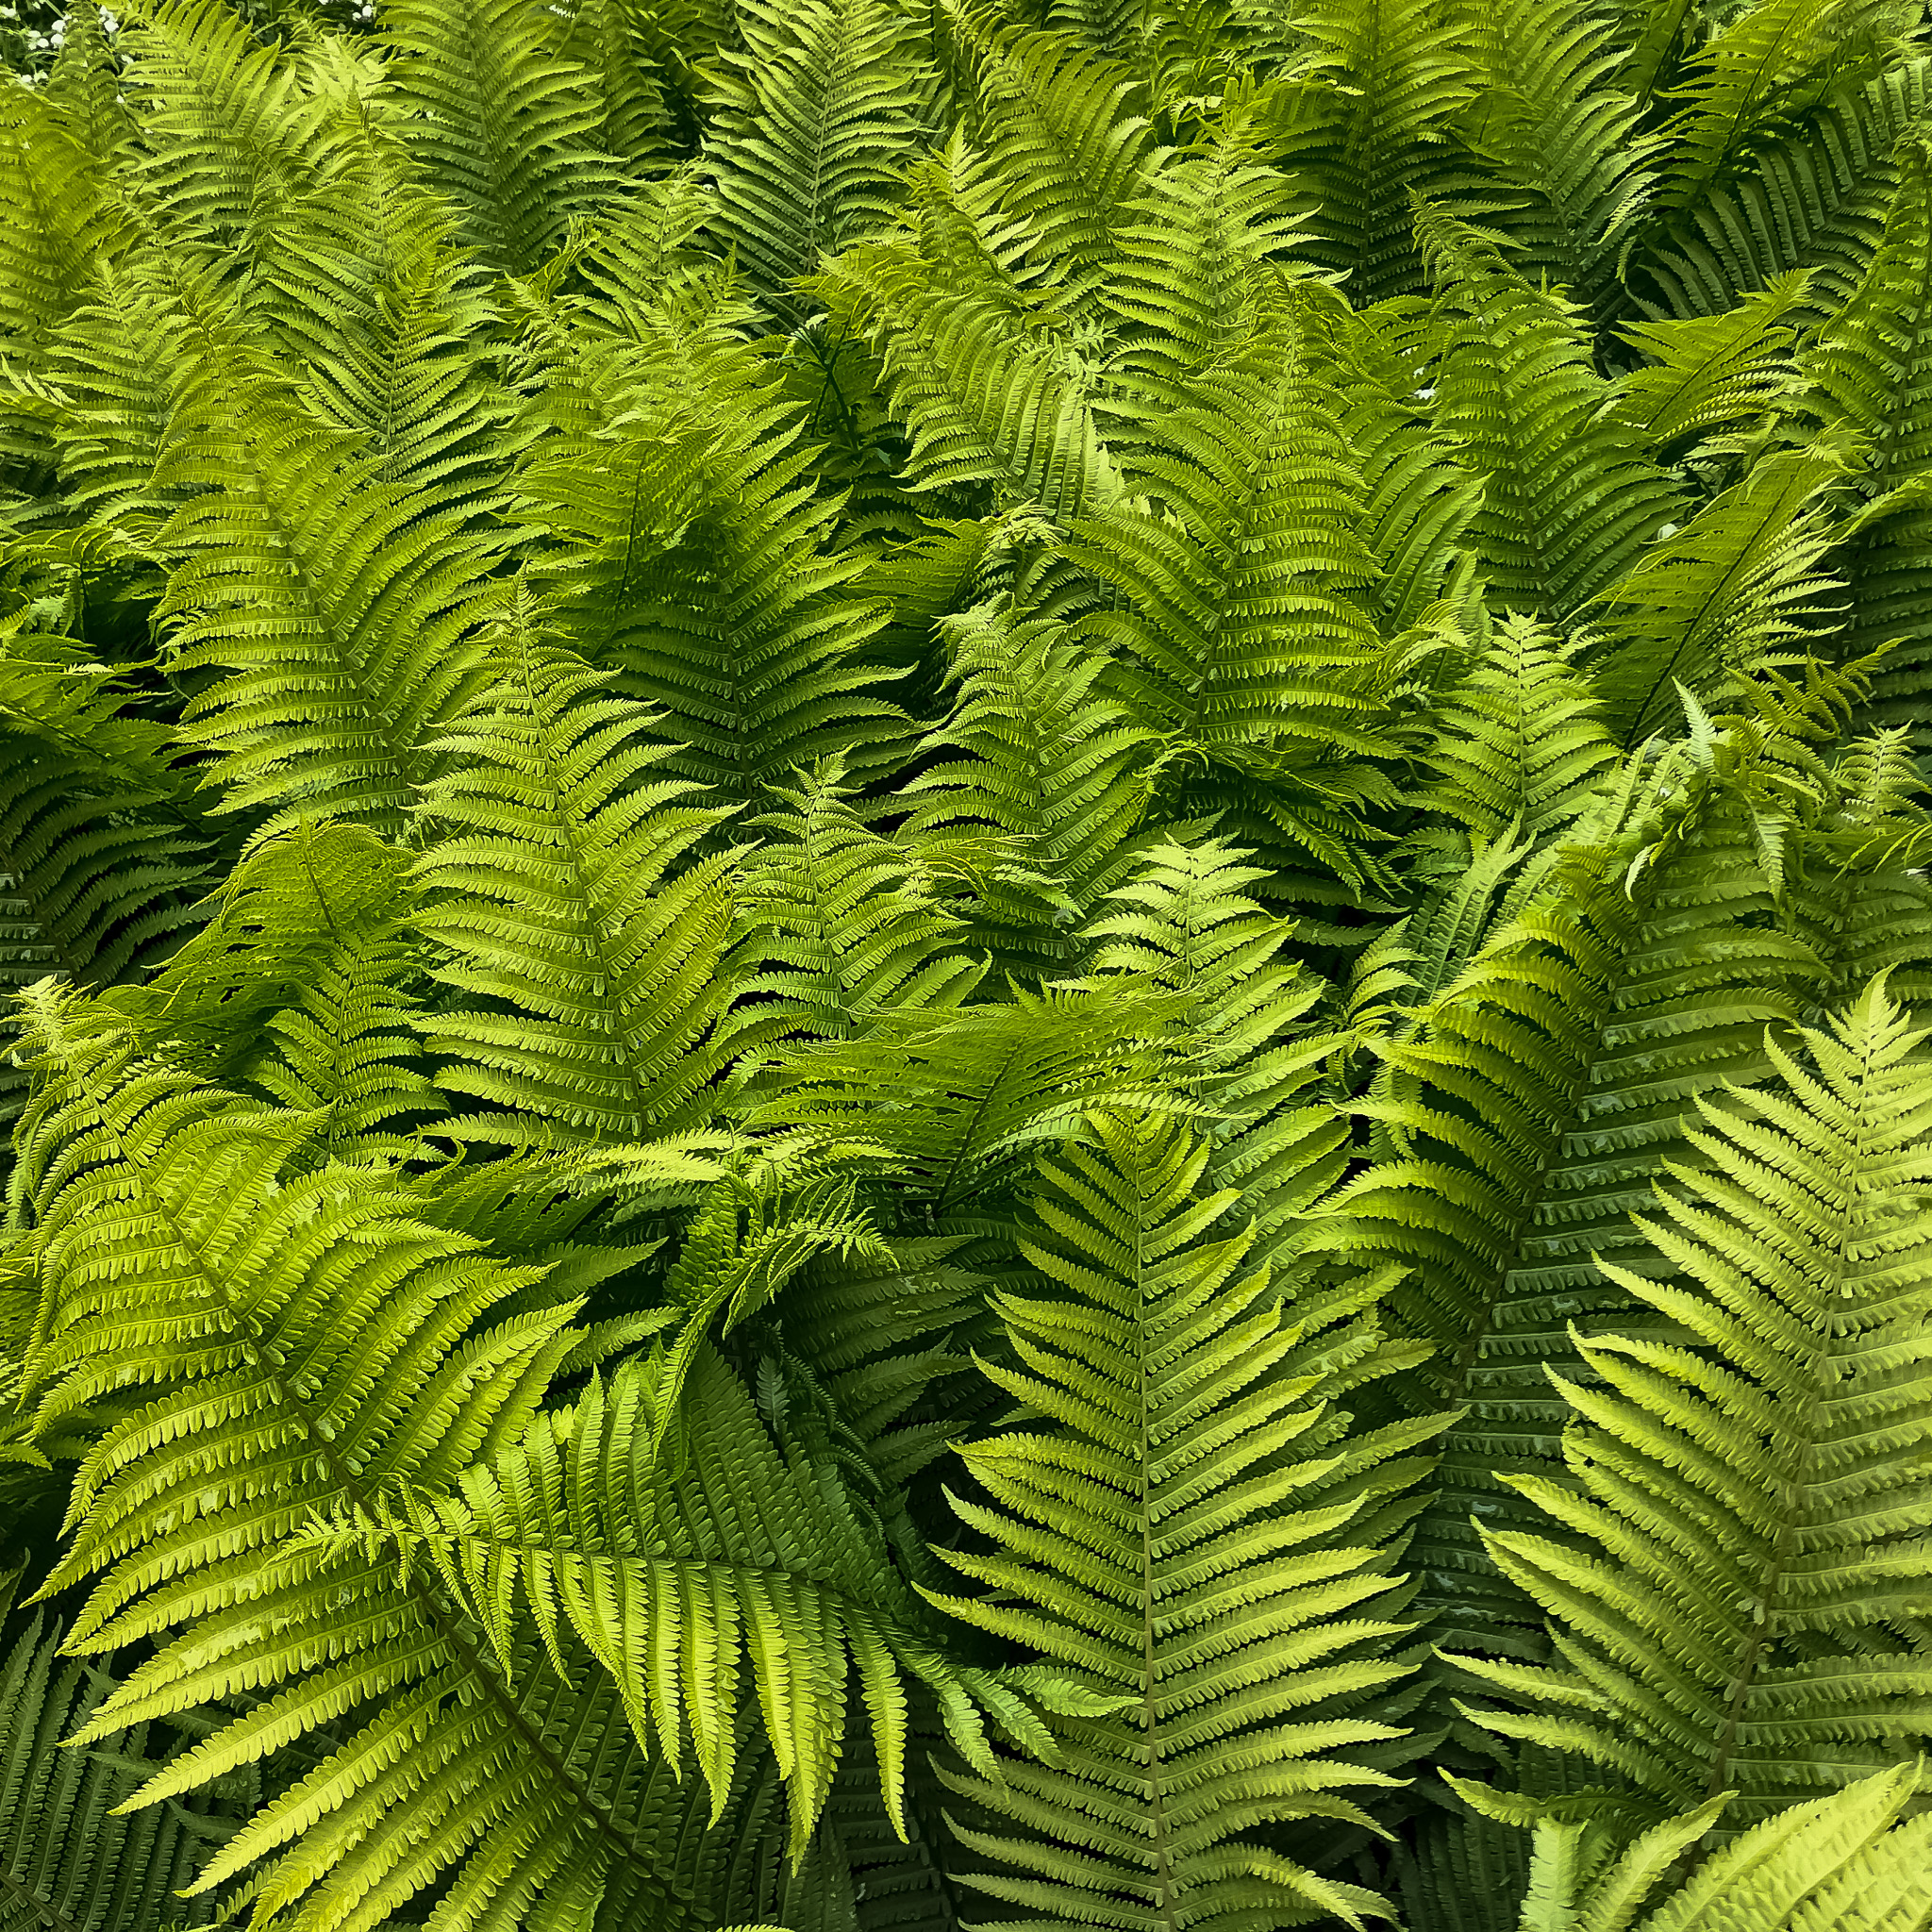 Cluster of Ferns